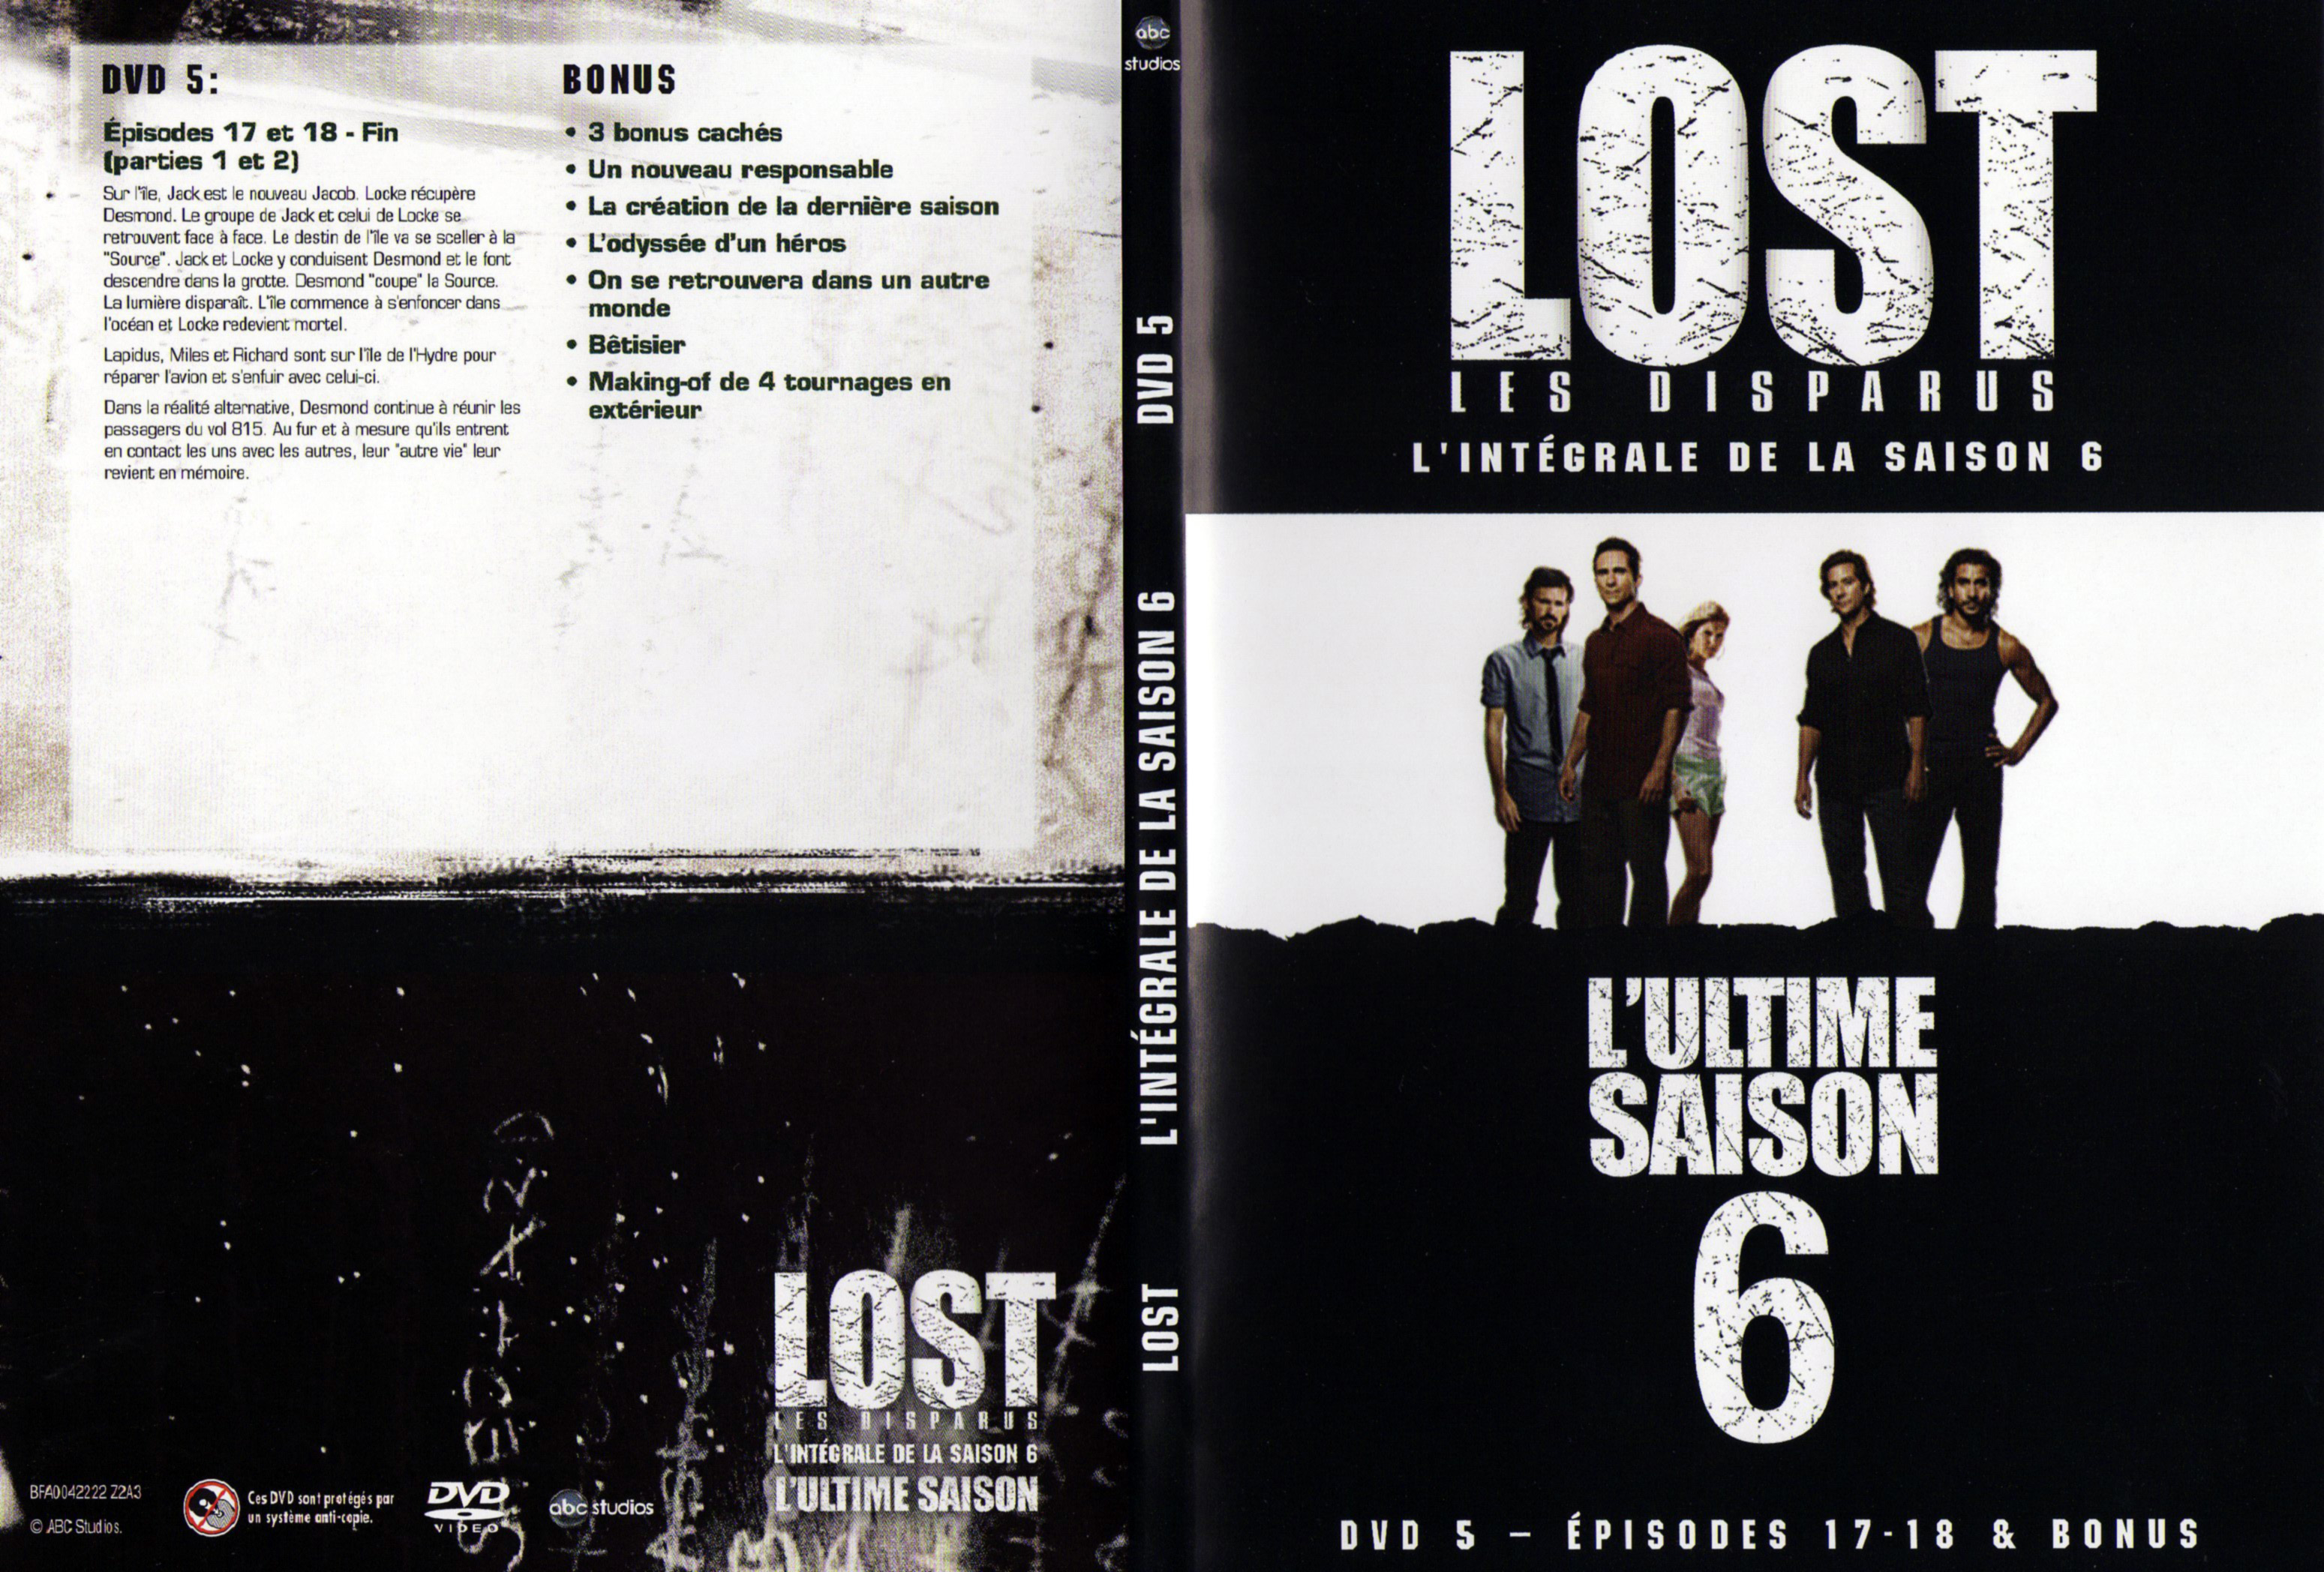 Jaquette DVD Lost Saison 6 DVD 3